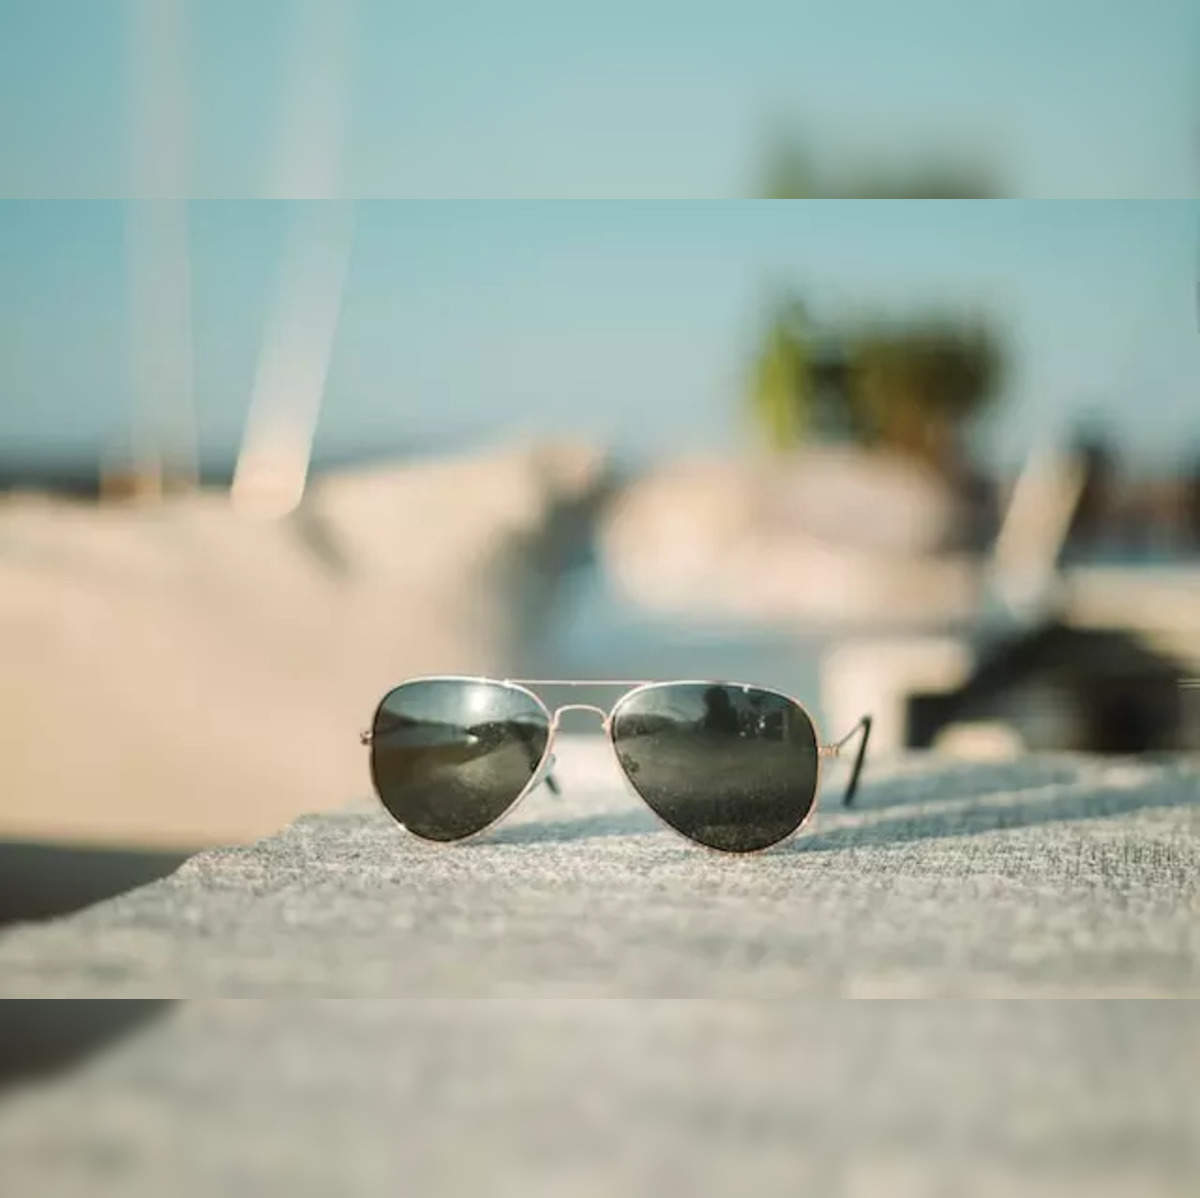 Buy Sunglasses For Women Online Starting at 899 - Lenskart